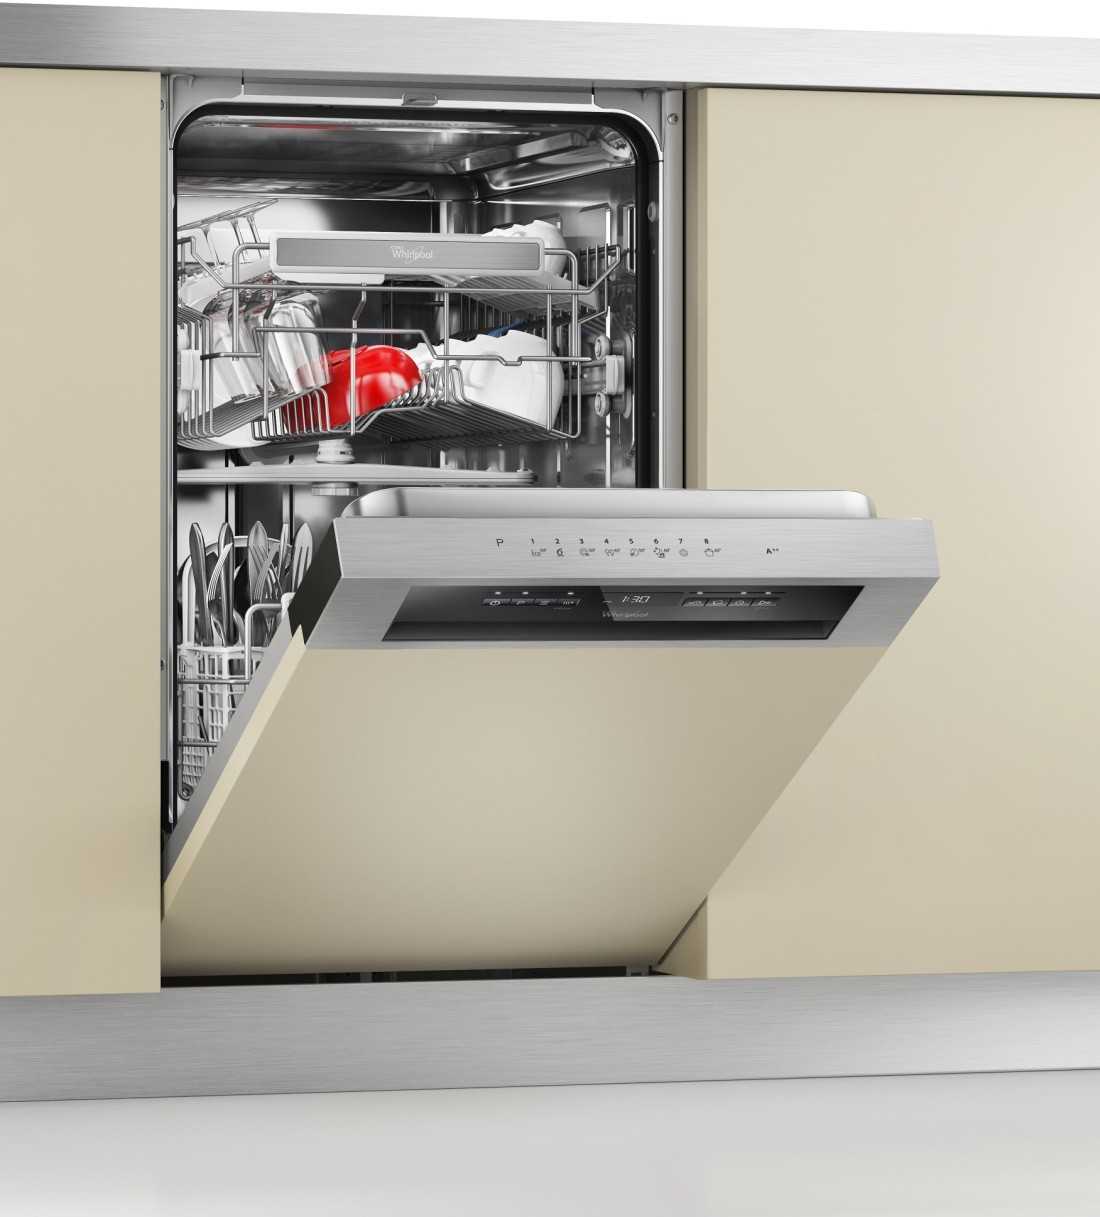 Посудомоечная машина полноразмерная bosch smv88td55r купить от 73230 руб в екатеринбурге, сравнить цены, видео обзоры и характеристики